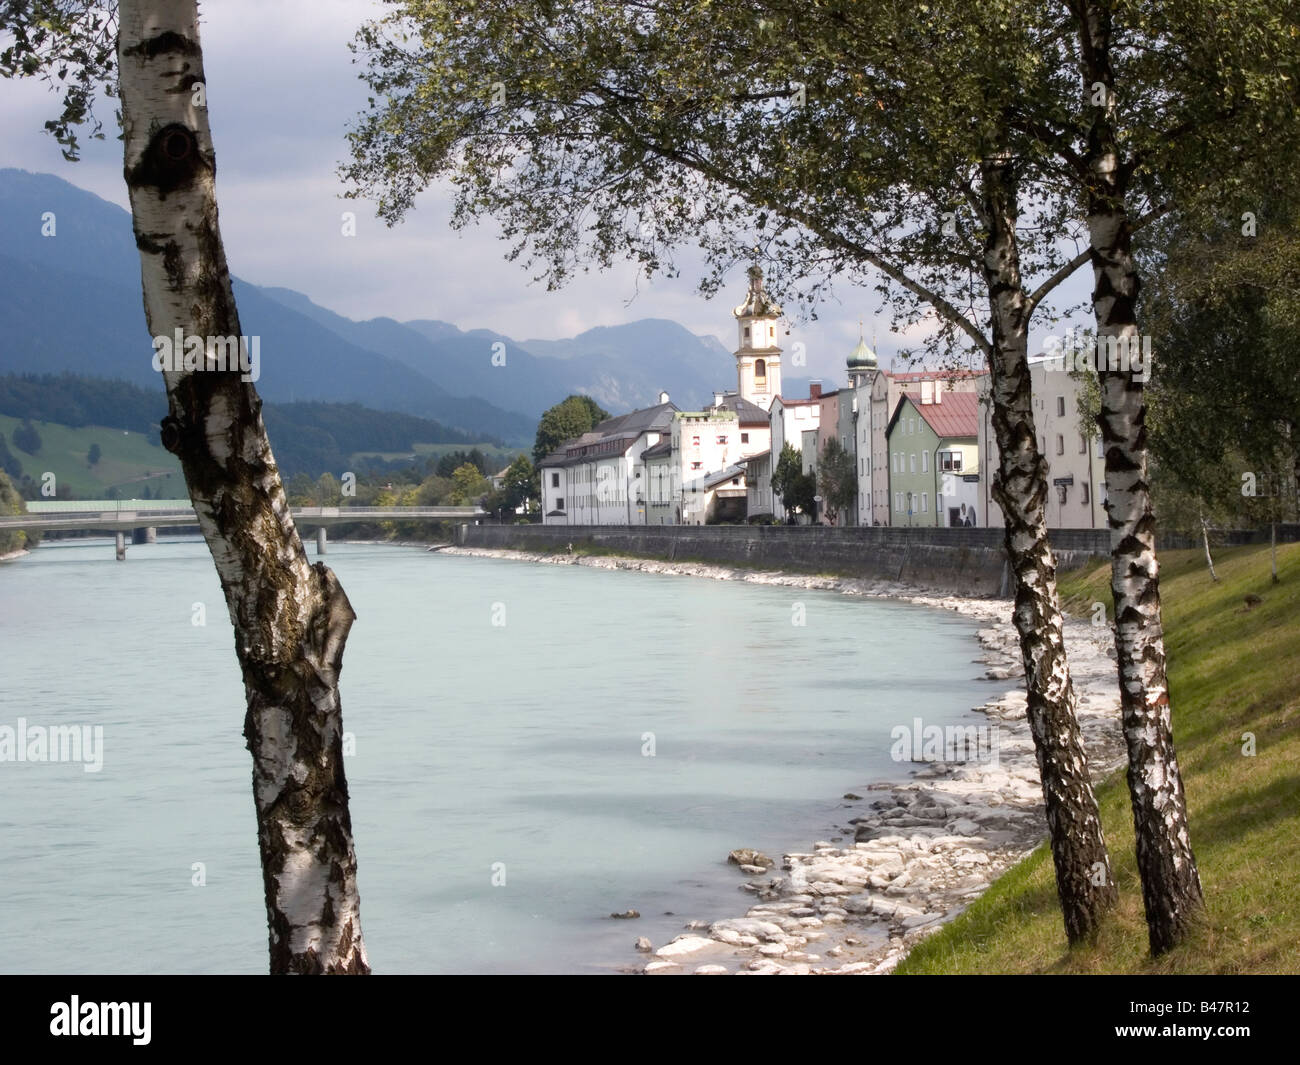 La ville historique de Rattenberg sur la rive de la rivière Inn Tyrol Autriche Banque D'Images